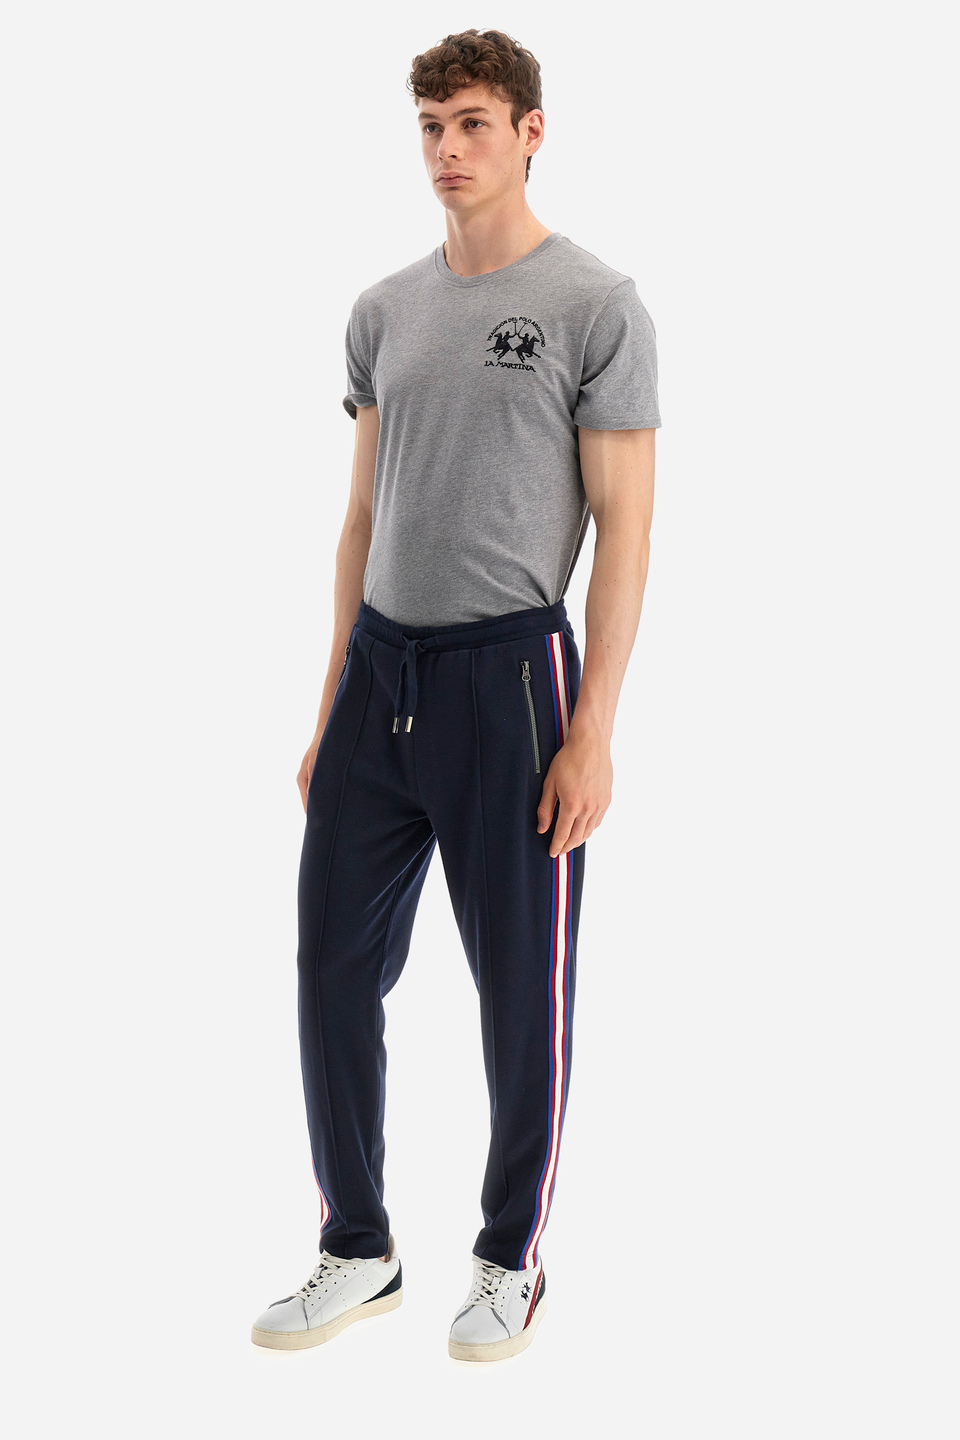 Pantaloni jogging uomo regular fit - Wescott | La Martina - Official Online Shop